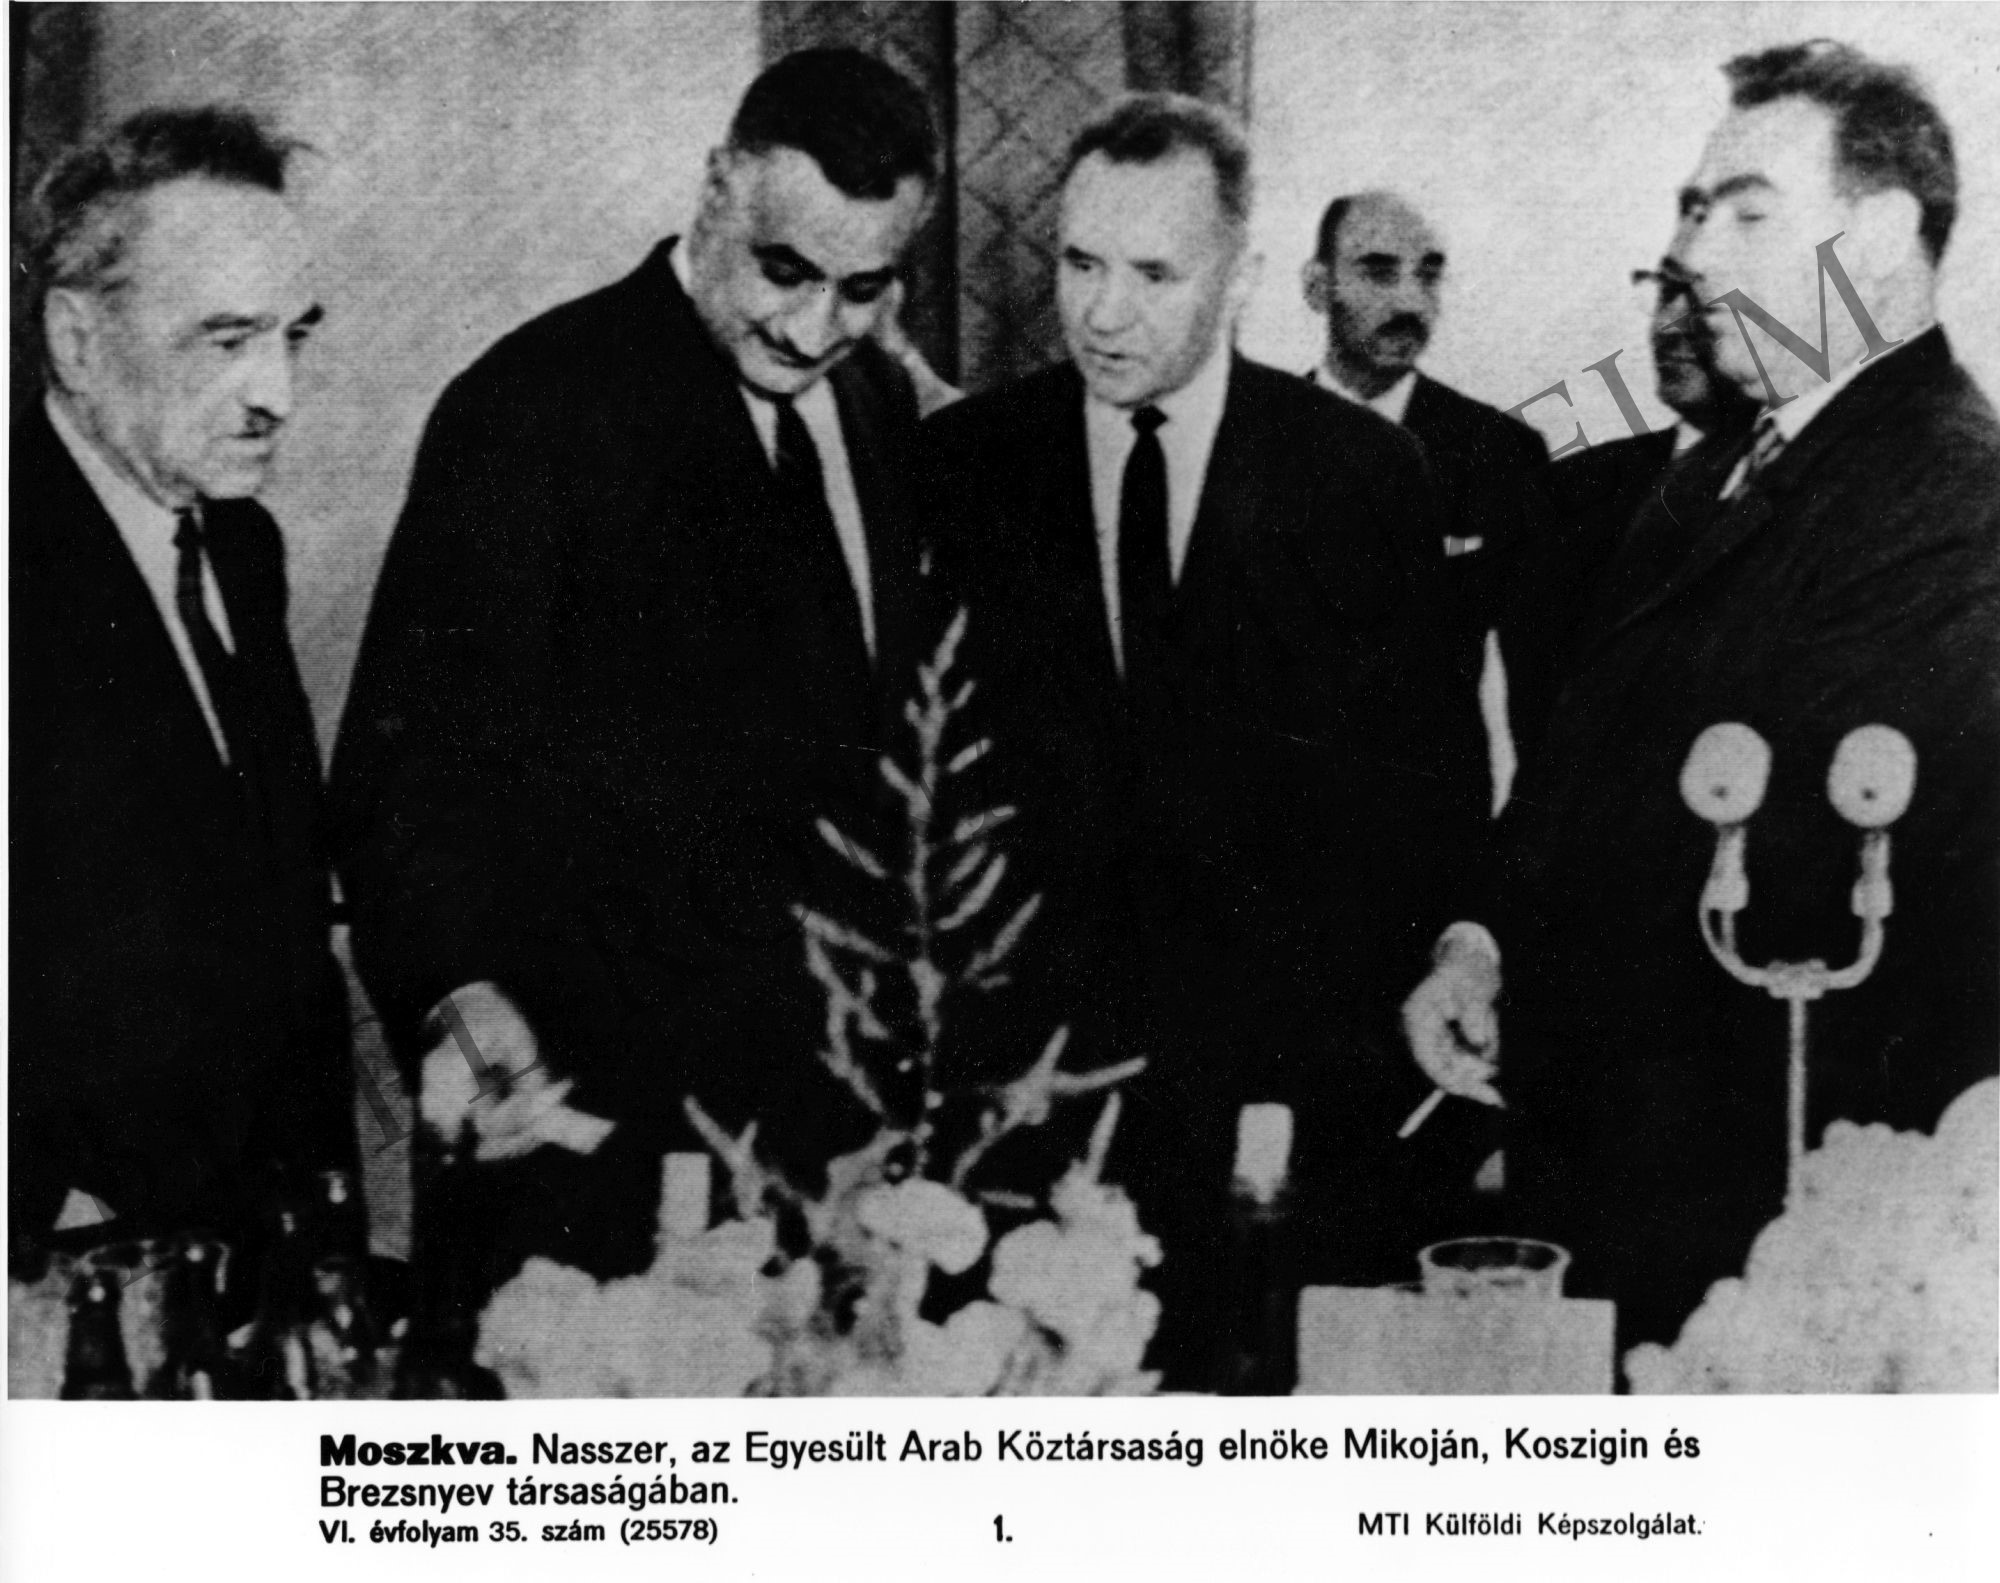 Nasszer, az EAK elnöke, Mikojan, Koszigin és Brezsnyev társaságában (Rippl-Rónai Múzeum CC BY-NC-SA)